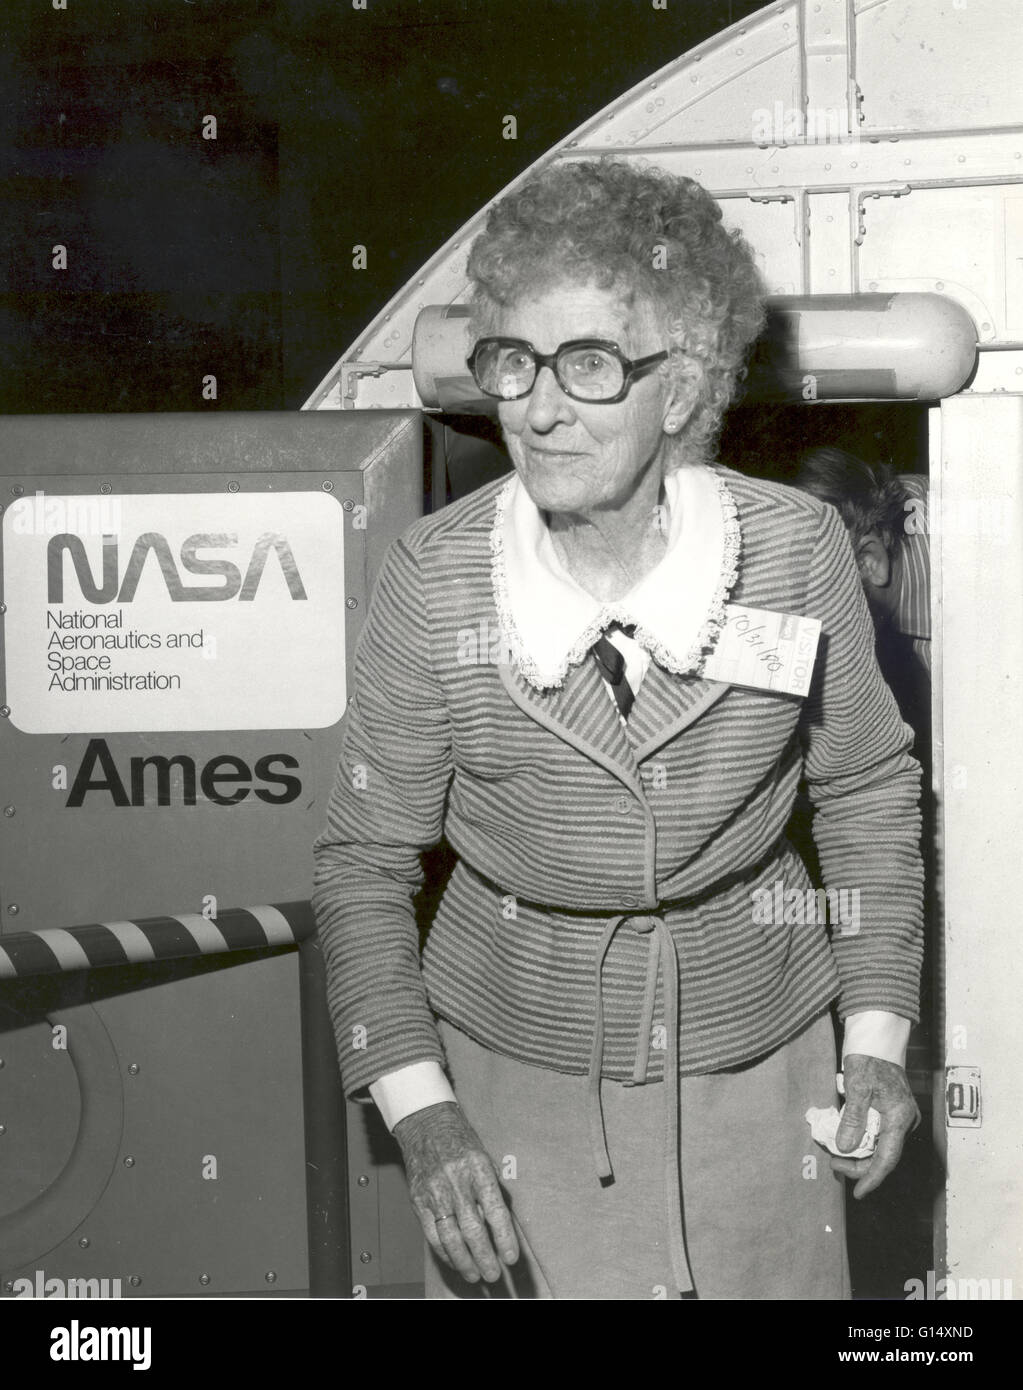 Snookie le Sud se dégage de l'avancée du simulateur de vol pour avions à Ames Research Center, 1980. Mary Neta Snook le sud (Février 14, 1896 - Mars 23, 1991) était un pionnier américain aviateur qui a réalisé une longue liste de premières. Elle a été la première fem Banque D'Images